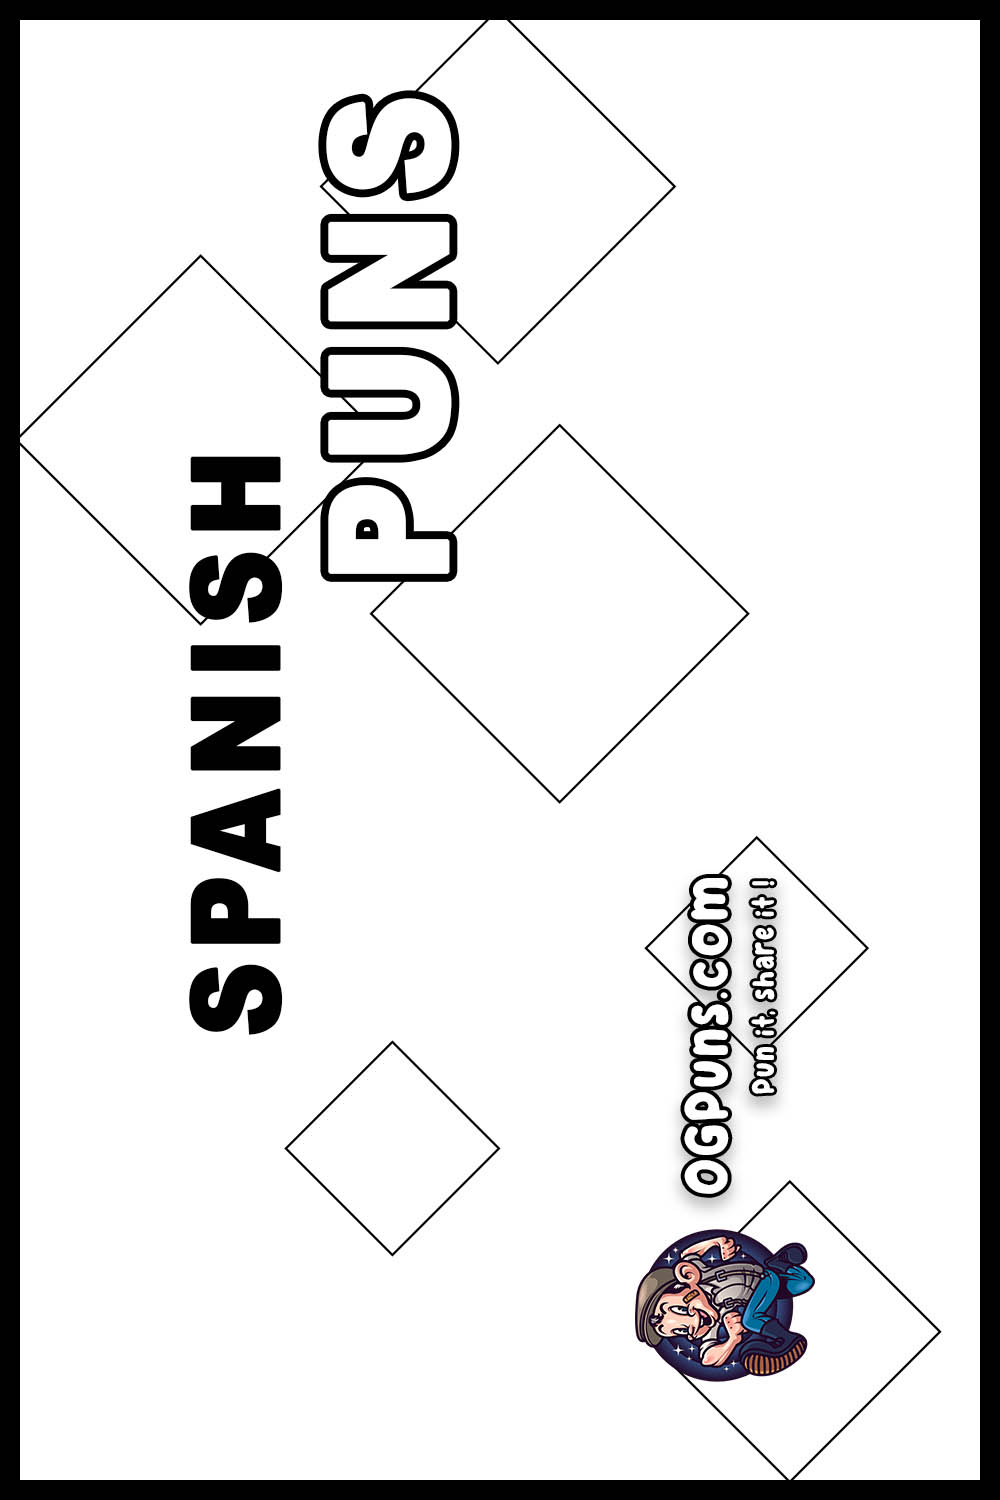 Spanish puns Pinterest Image